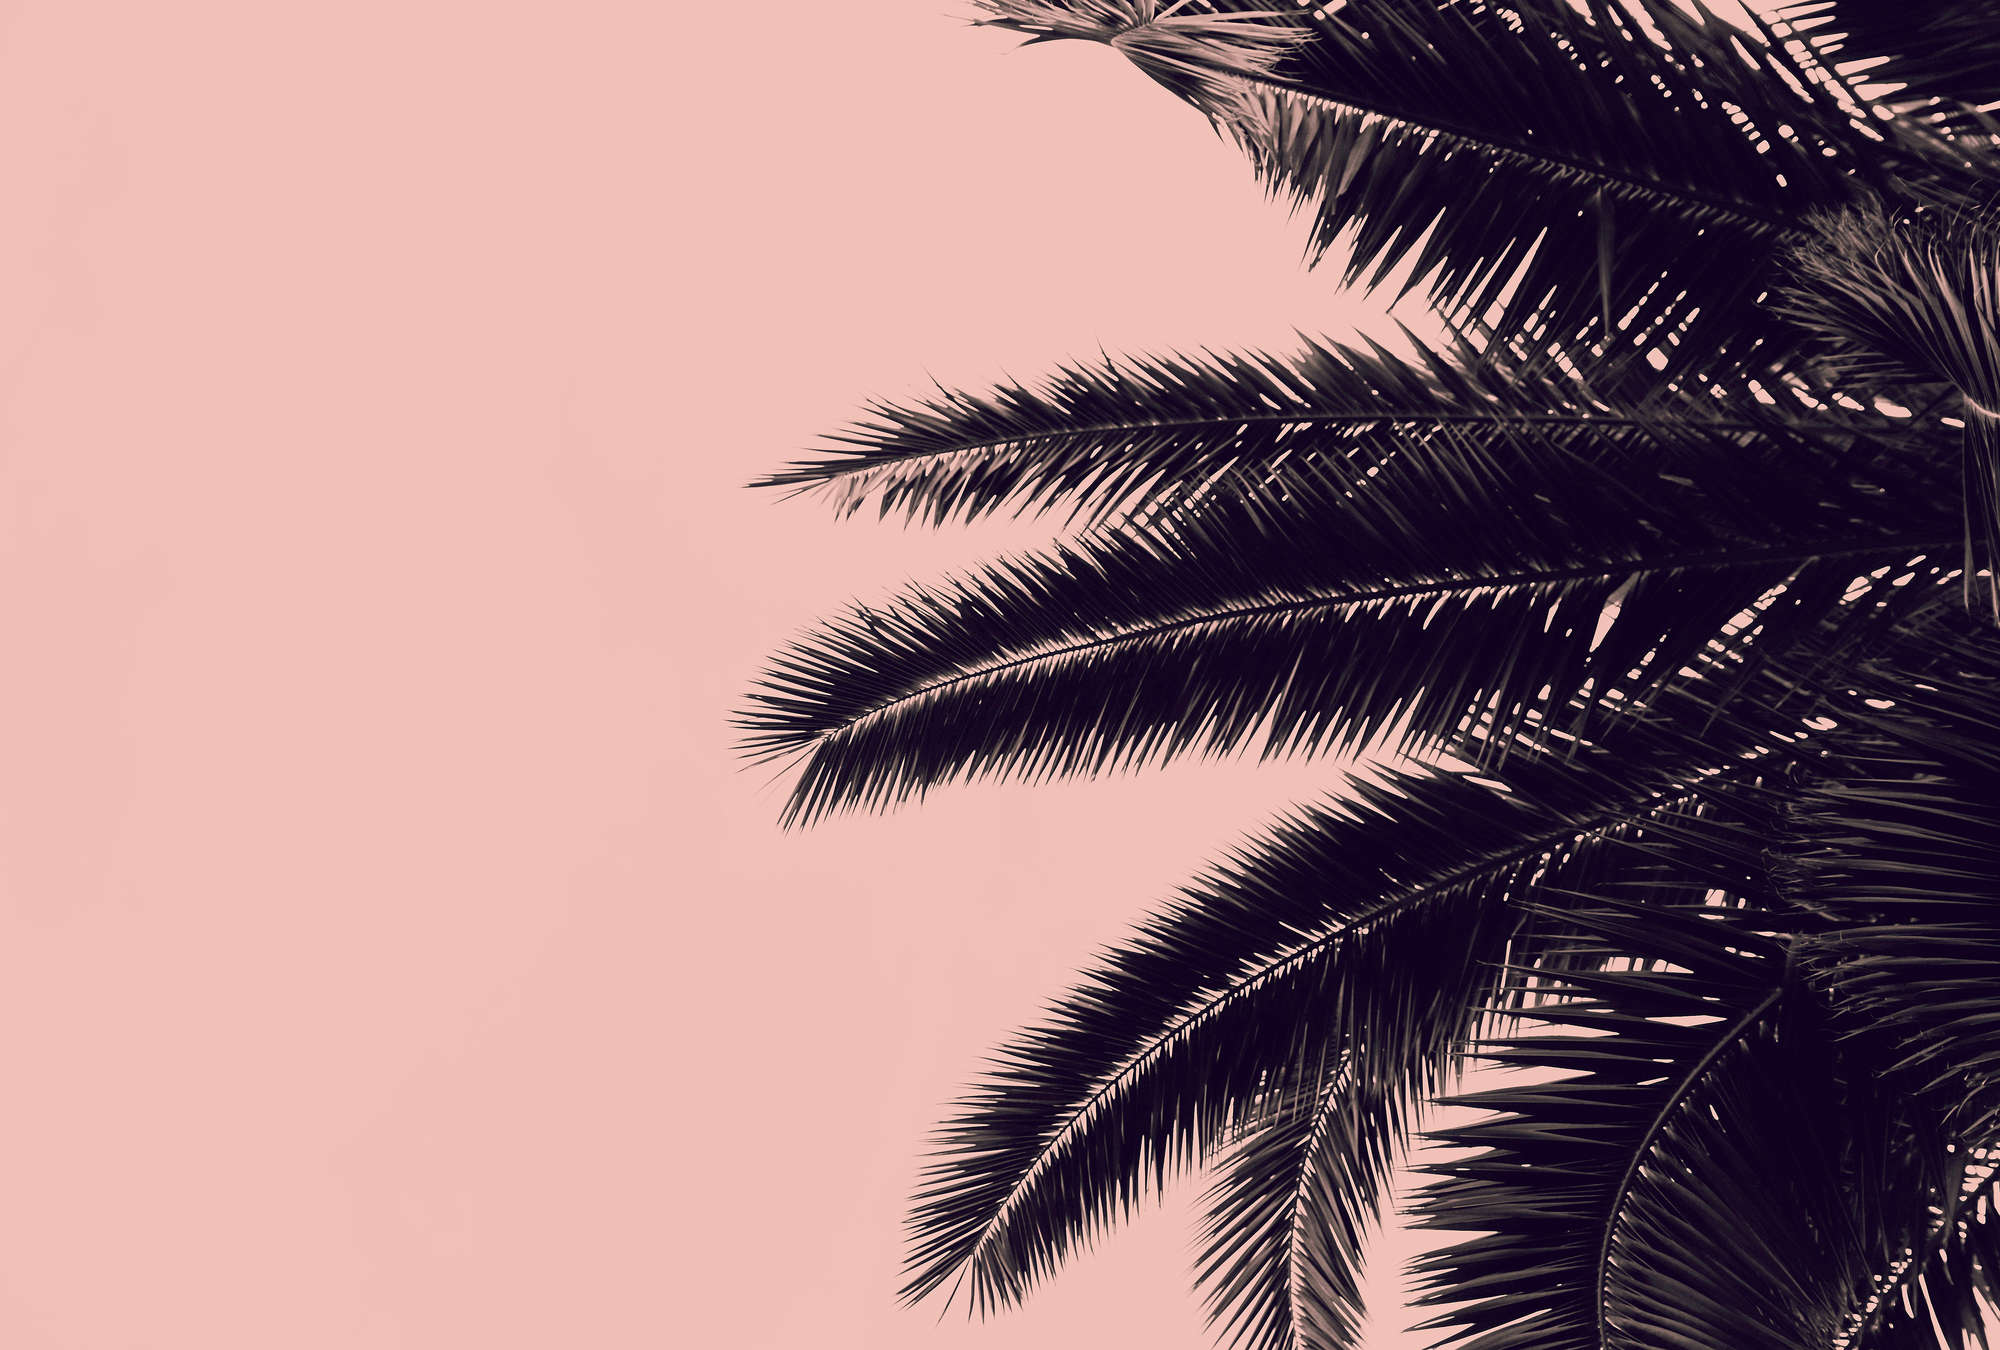             Roze fotobehang met zwarte palmbladeren
        